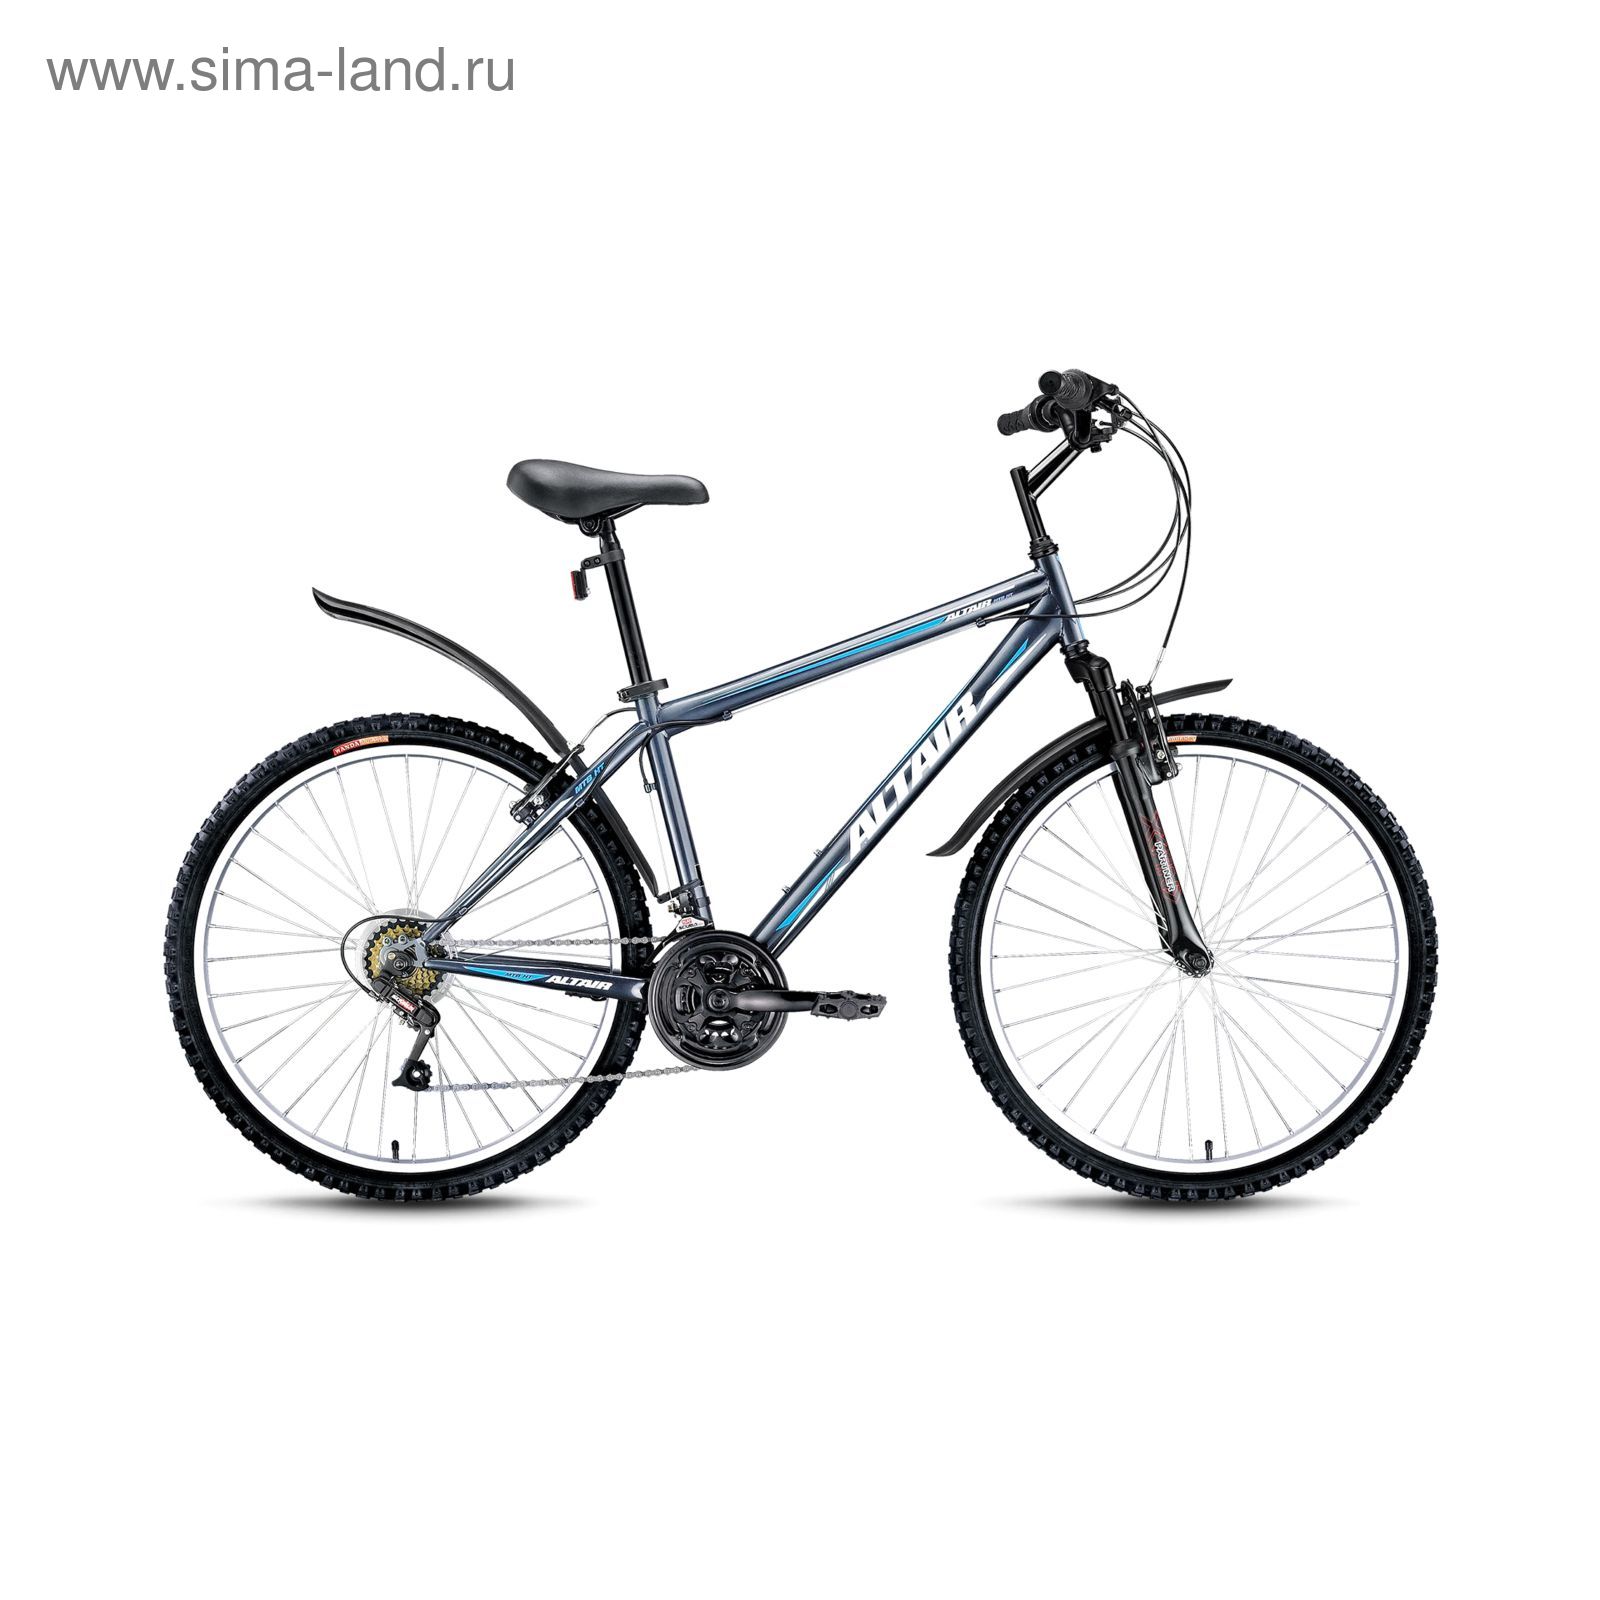 Велосипед 26" Altair MTB HT 26, 2016, цвет серый, размер 15"